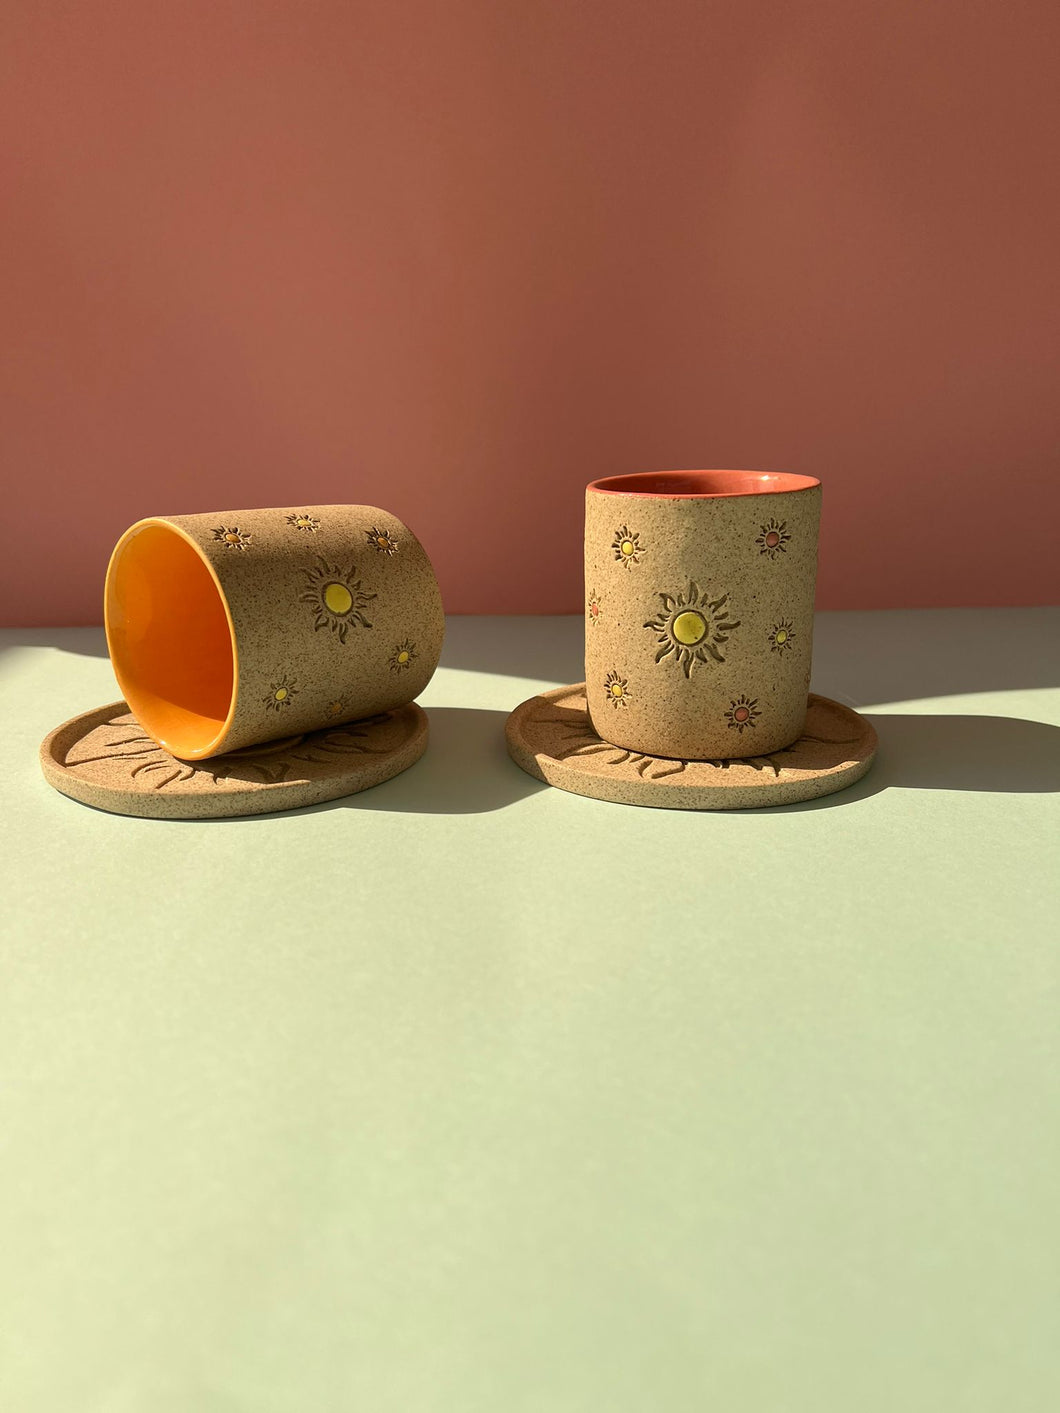 Sunshine cups